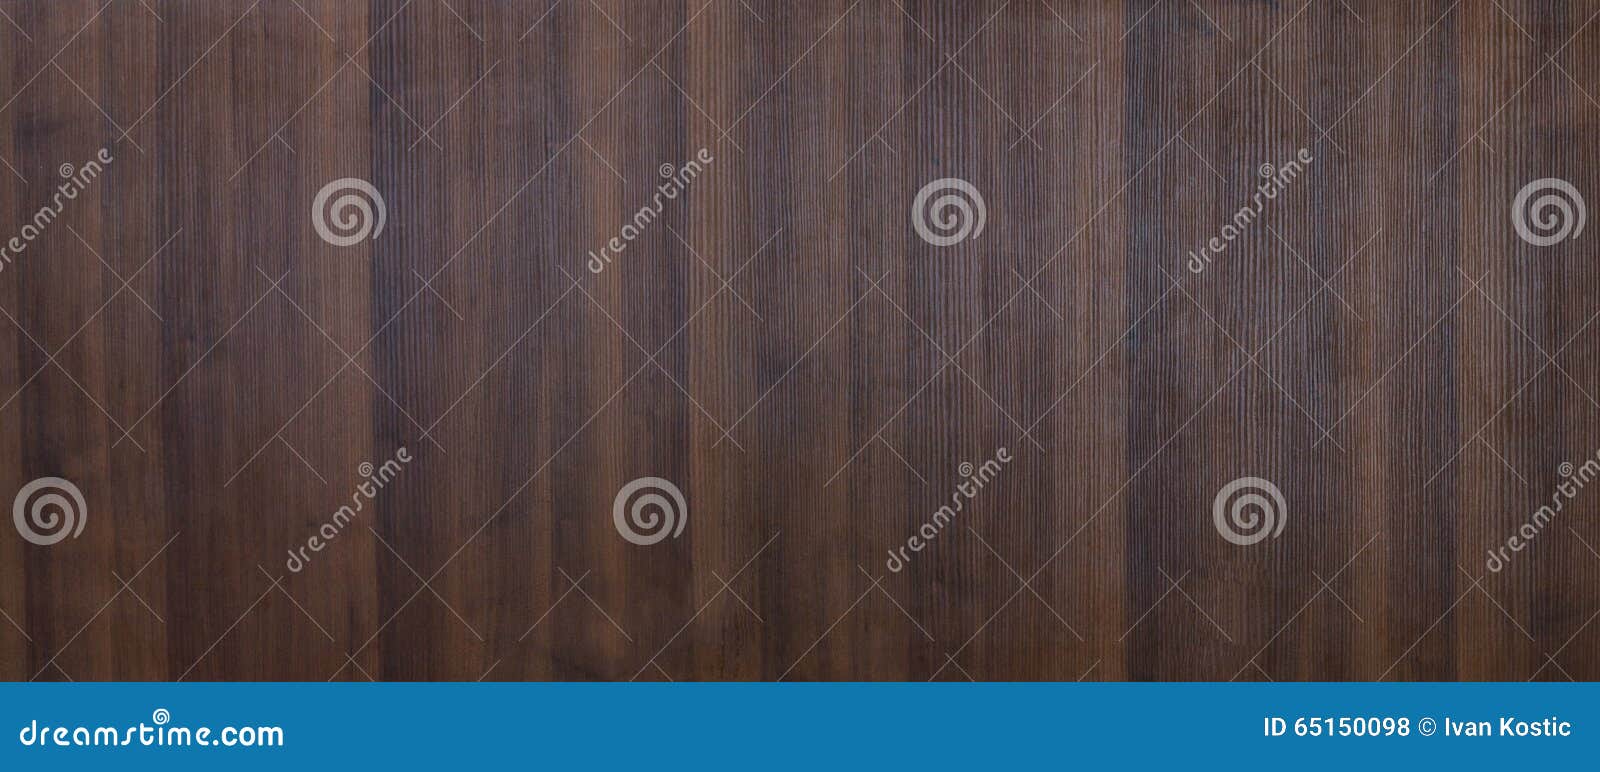 walnut wood texture